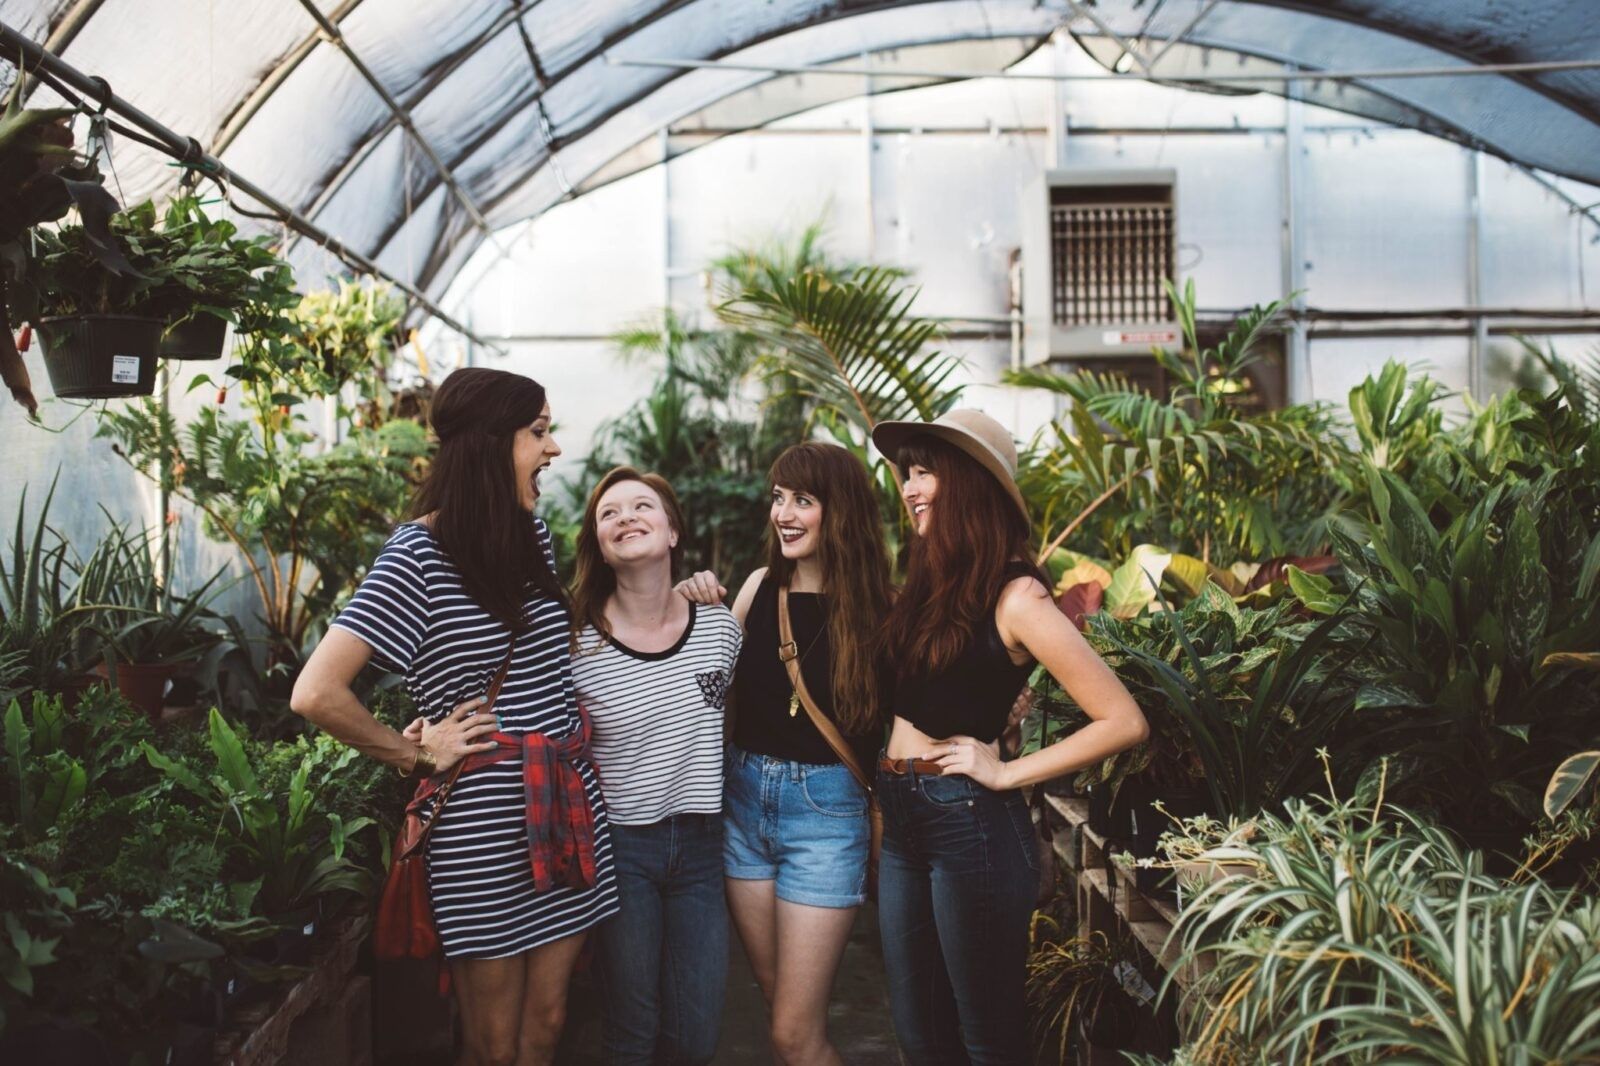 Friends-in-a-greenhouse